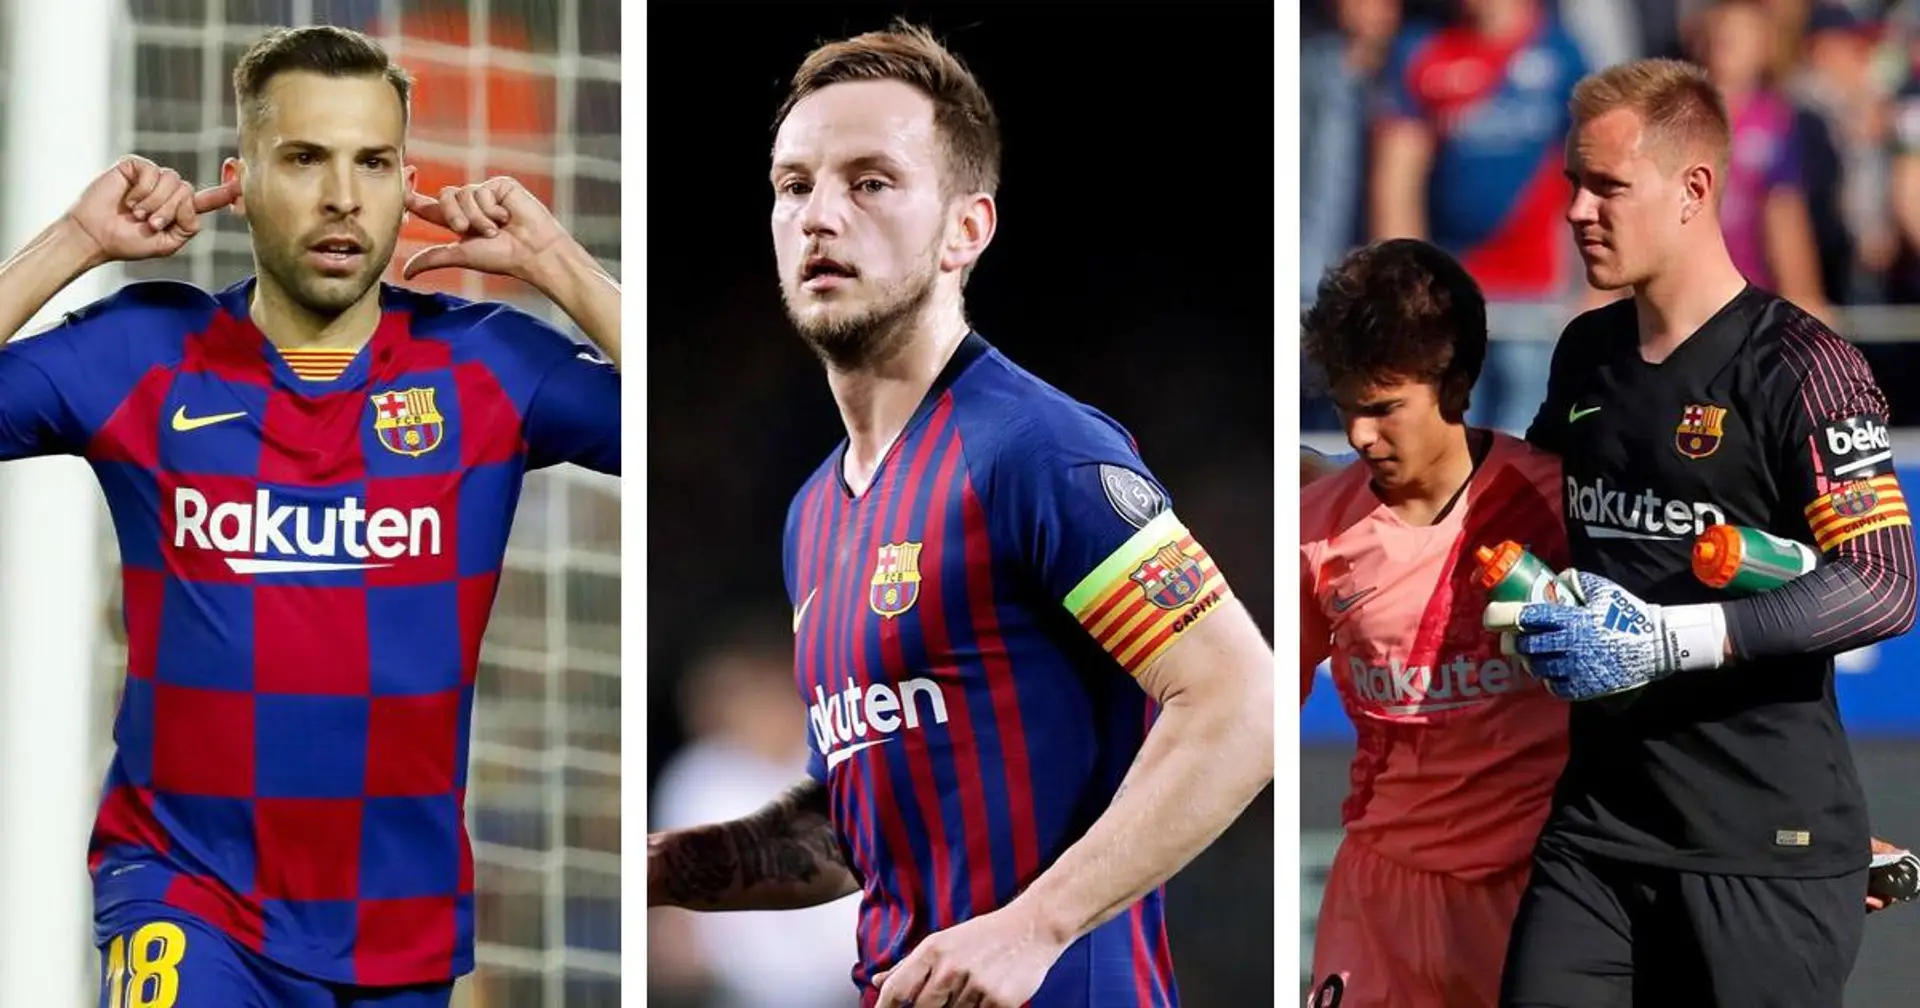 4 jugadores que podrían convertirse en el 4° capitán del equipo si Leo Messi se marcha